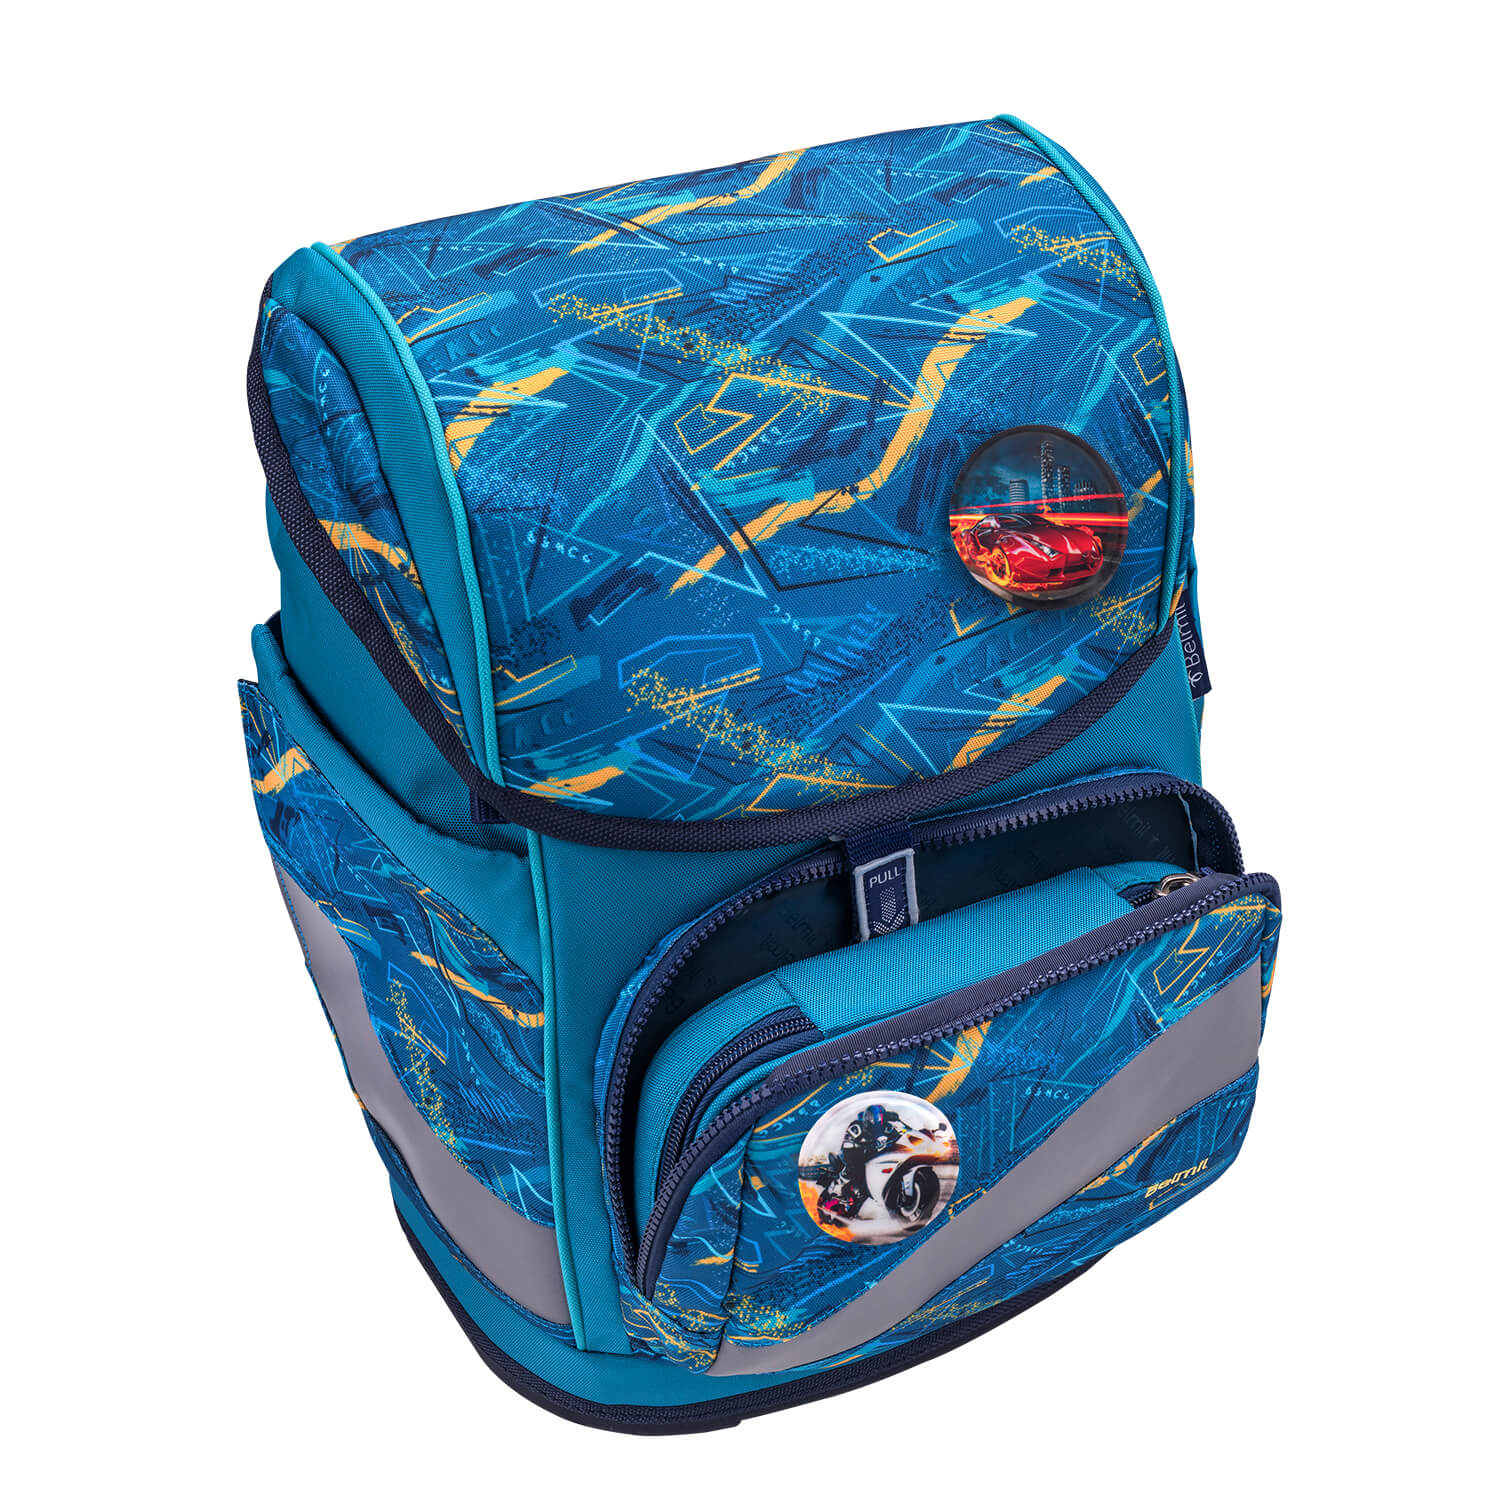 Smarty Plus Baltic Schoolbag set 5pcs.